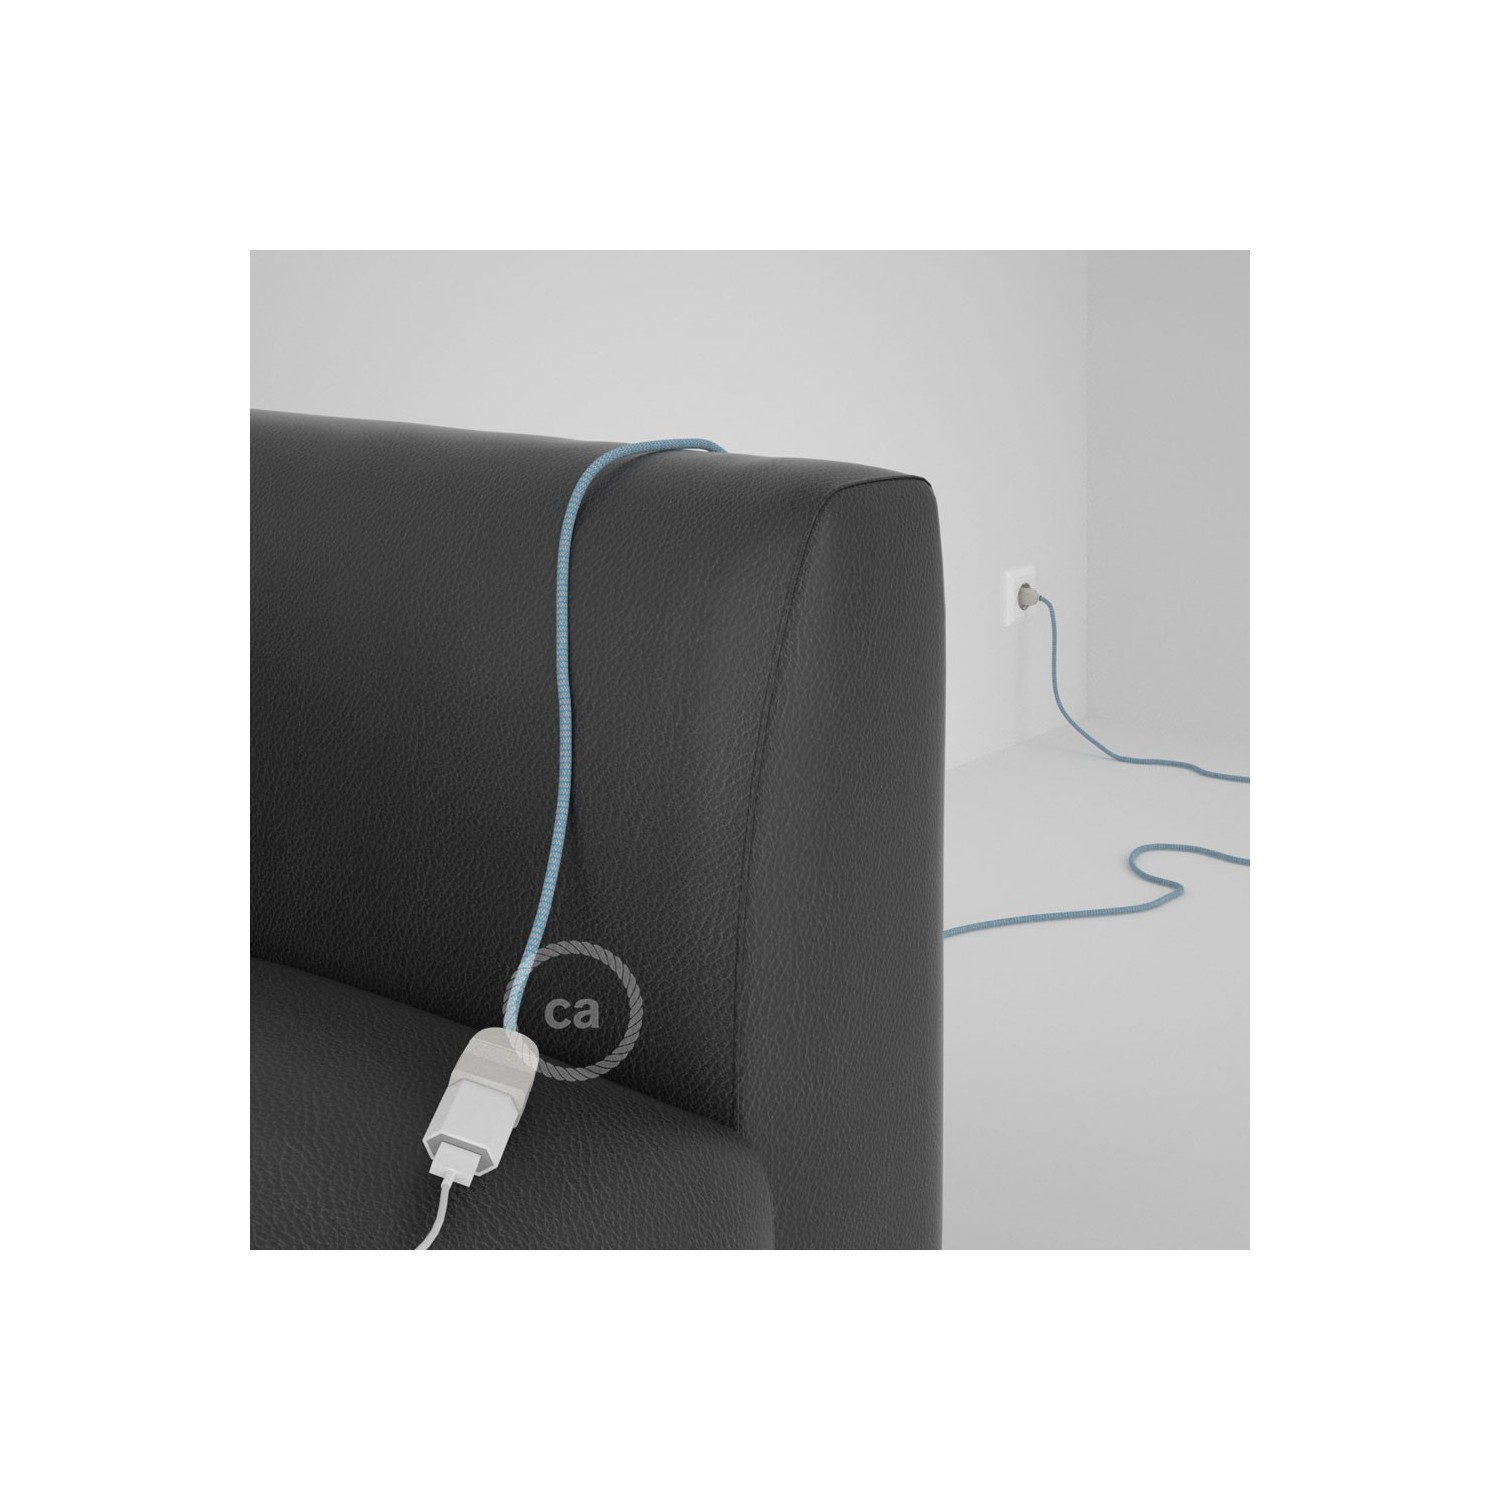 Rallonge électrique avec câble textile RD75 Coton et Lin Naturel ZigZag Bleu Steward 2P 10A Made in Italy.